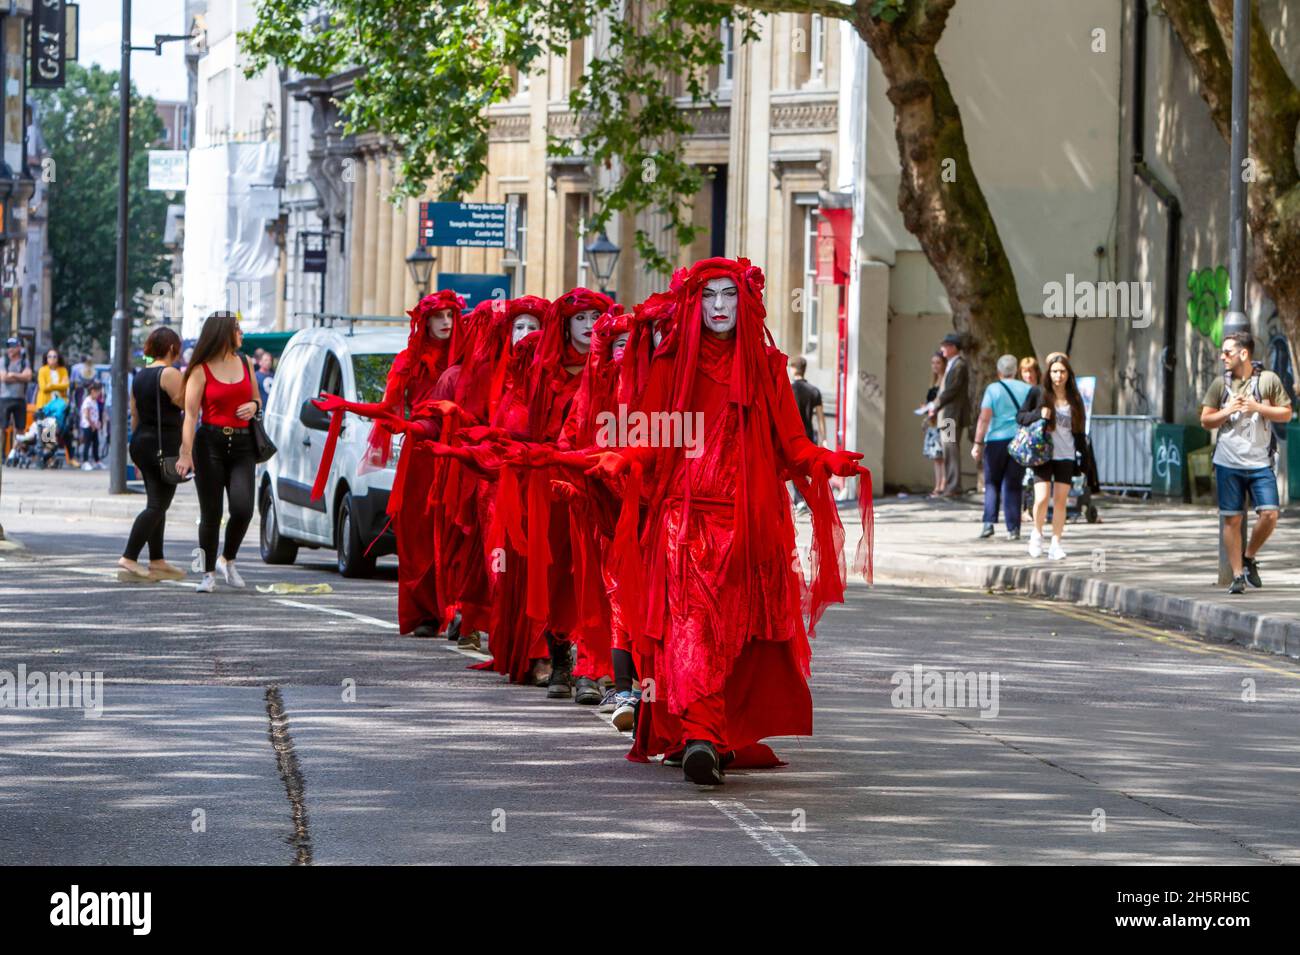 Photographie de rue d'un groupe d'artistes de cirque invisibles de la Brigade Rouge agissent sur une manifestation sur le changement climatique qui se promets dans les rues d'une ville. Banque D'Images